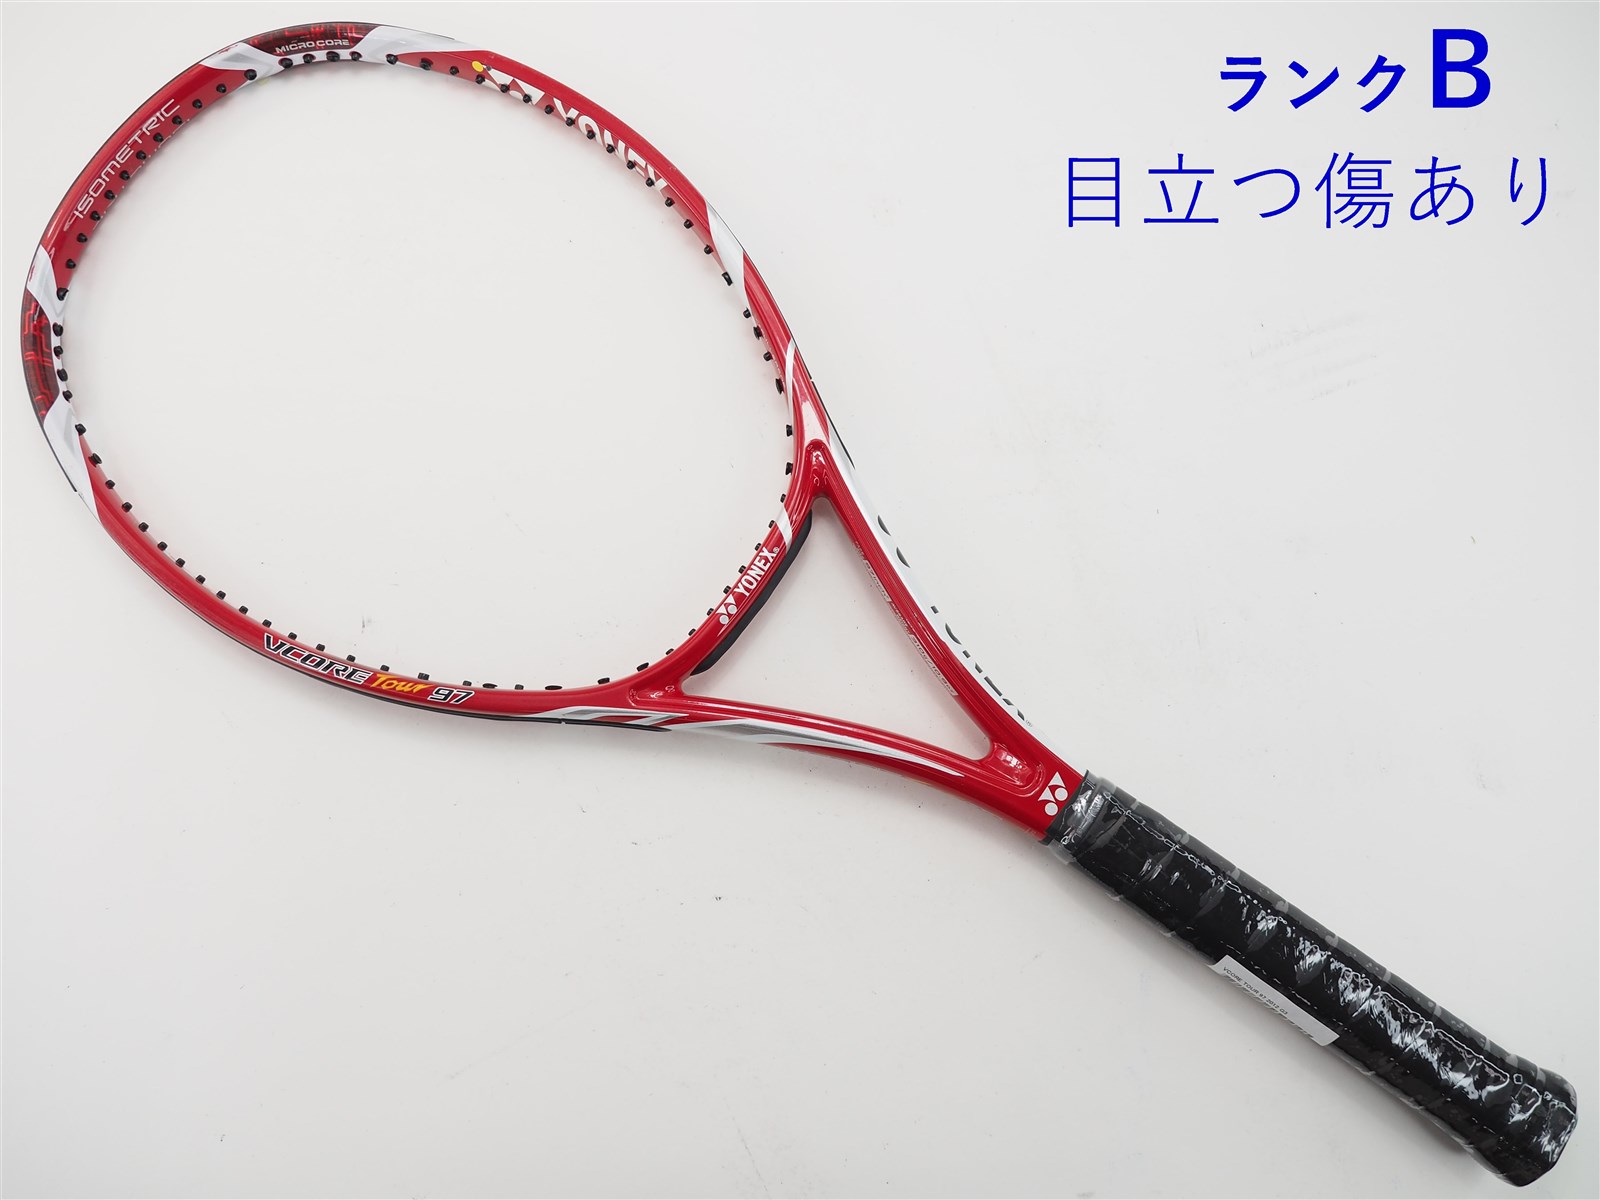 テニスラケット ヨネックス ブイコア ツアー 97 2012年モデル (G2